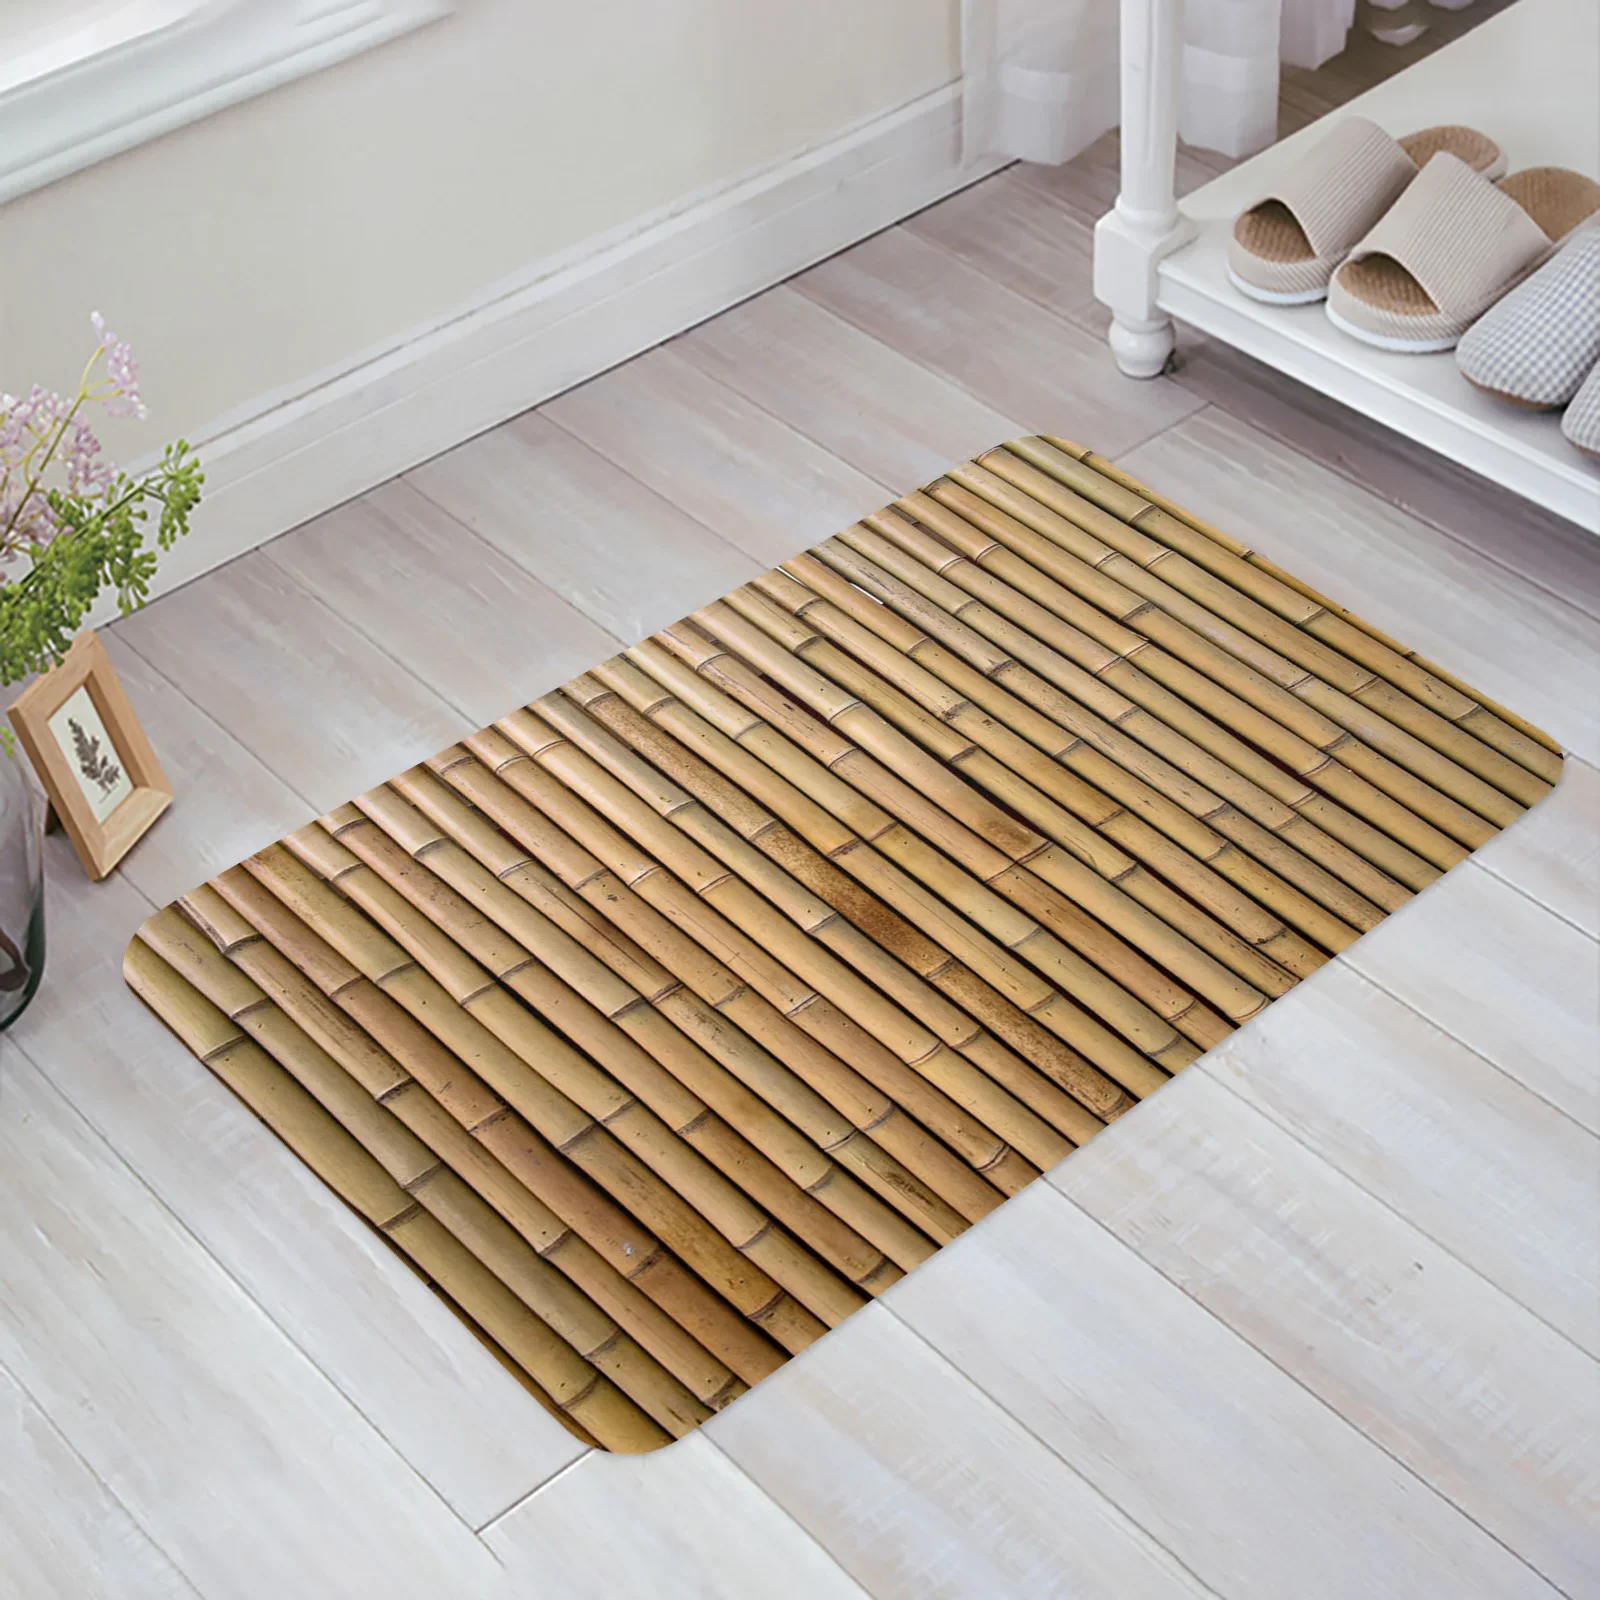 https://ae01.alicdn.com/kf/Sca52889fdbf644e79e76aec16d33d36cj/Bamboo-Retro-Shabby-Plant-Bathroom-Mat-Corridor-Carpet-Kitchen-Mat-Entrance-Door-Mats-Welcome-Room-Floor.jpg